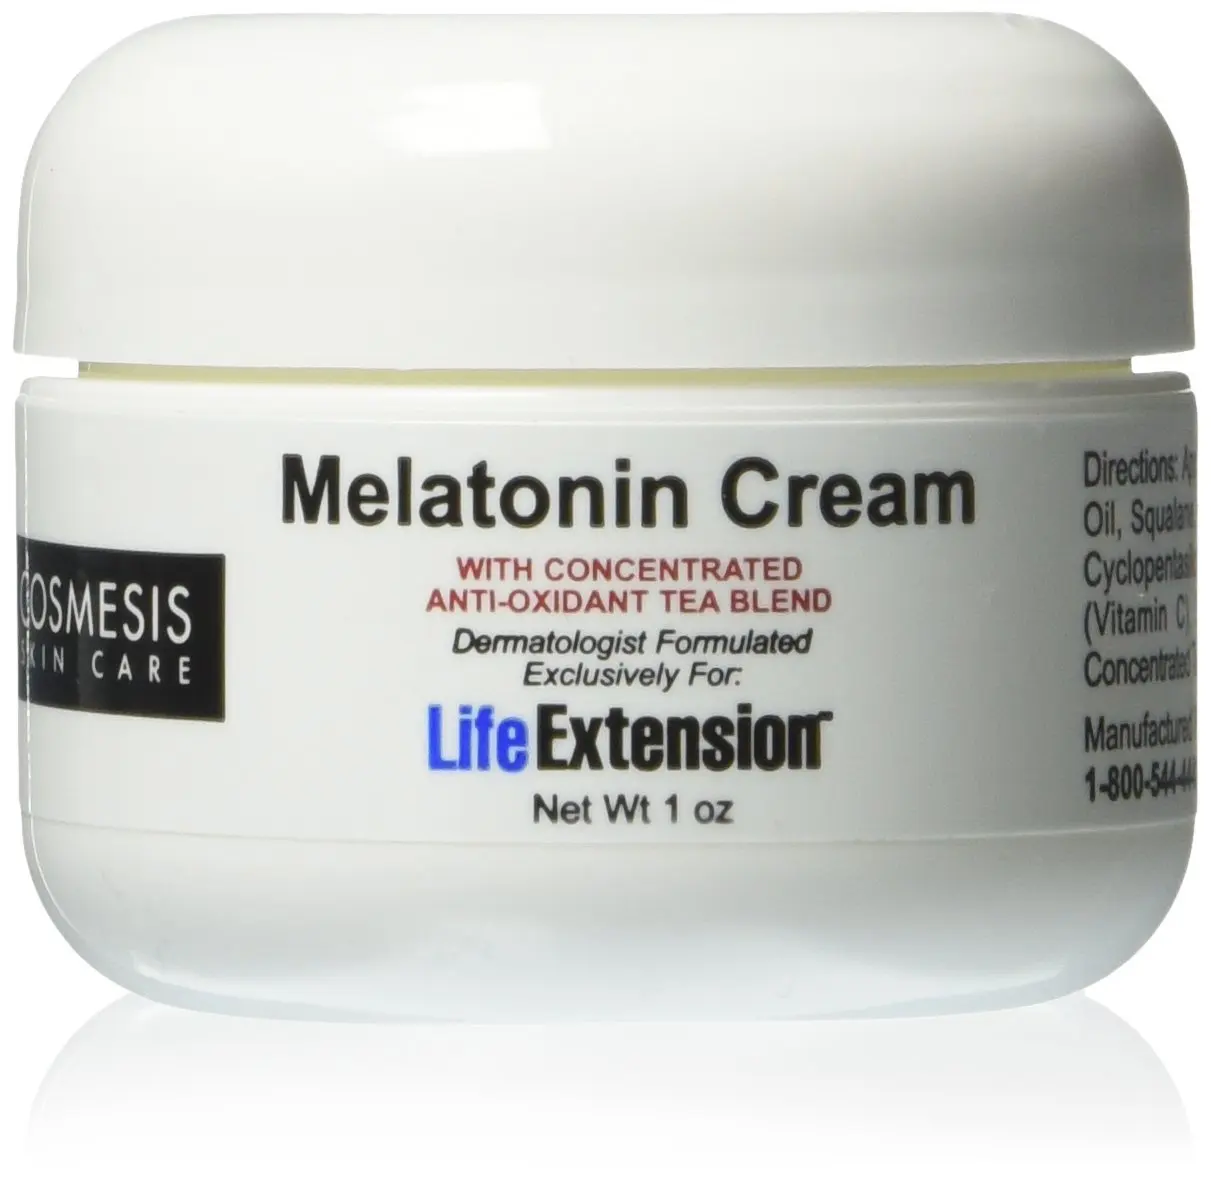 Купить крем. Крем с мелатонином. Мелатонин крем. Крема для лица с алатонином. Мелатонин крем для кожи.